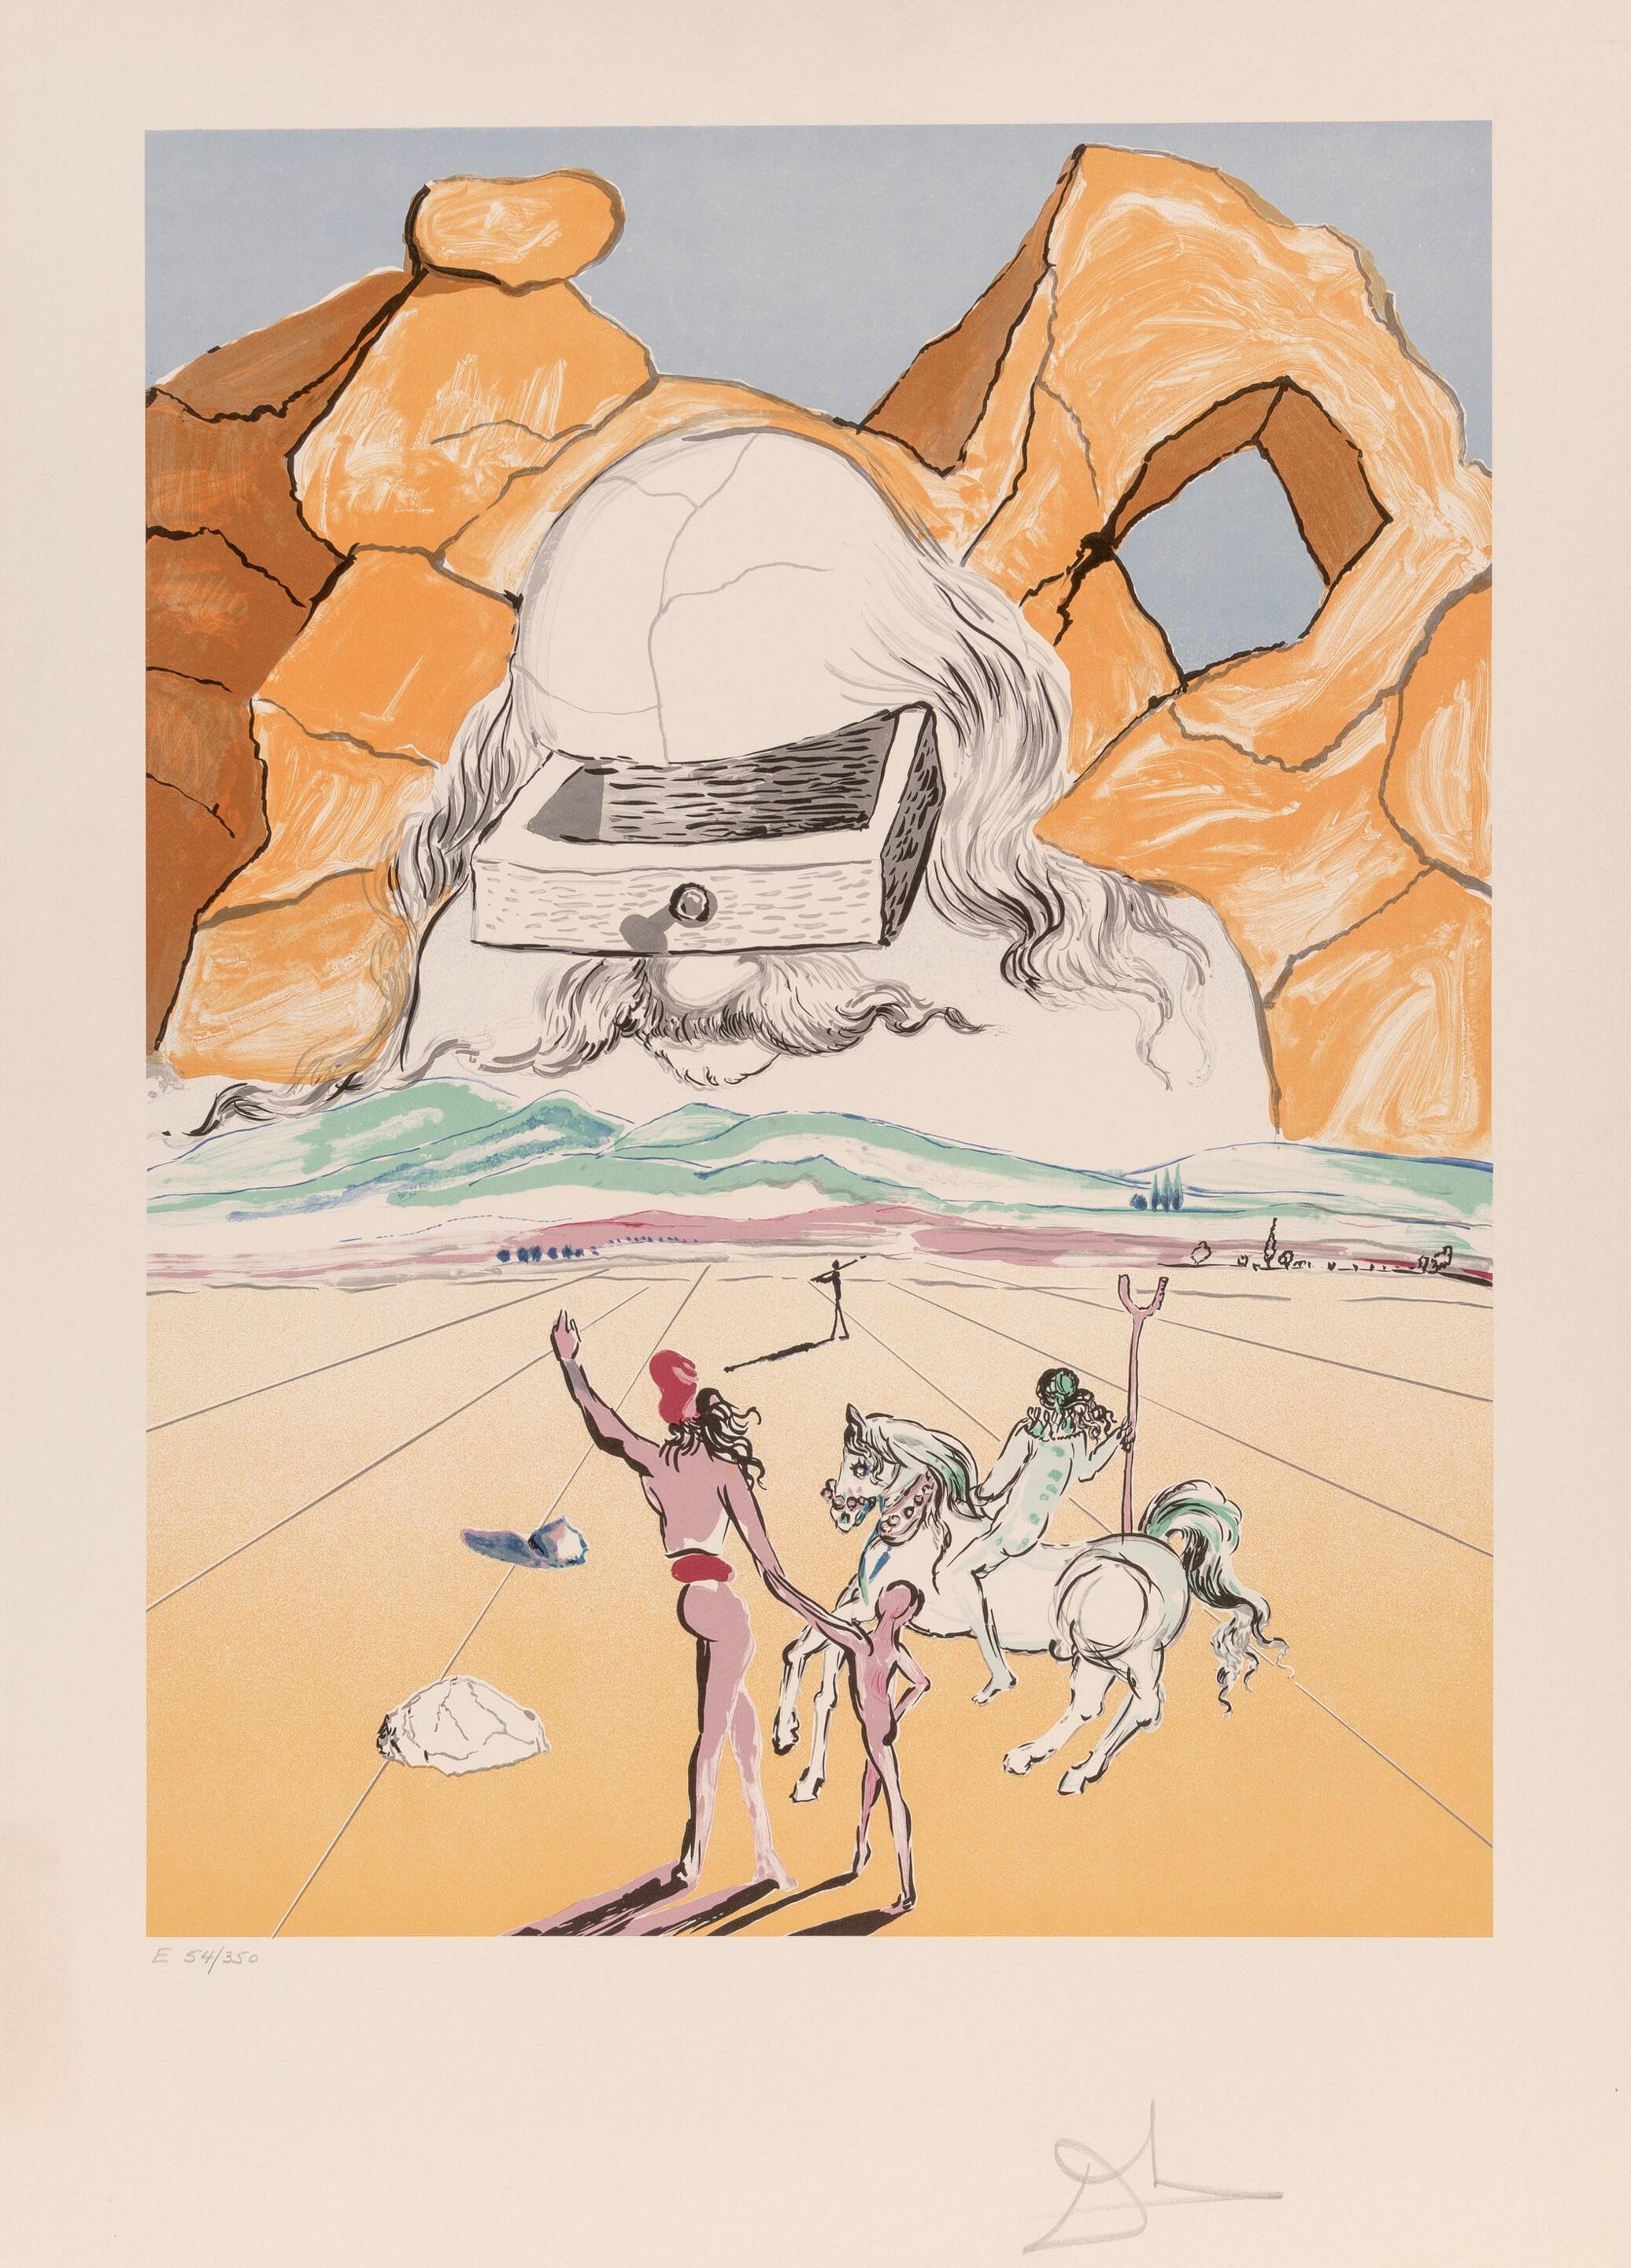 Le chemin de la sagesse, de Retrospective - Print de Salvador Dalí